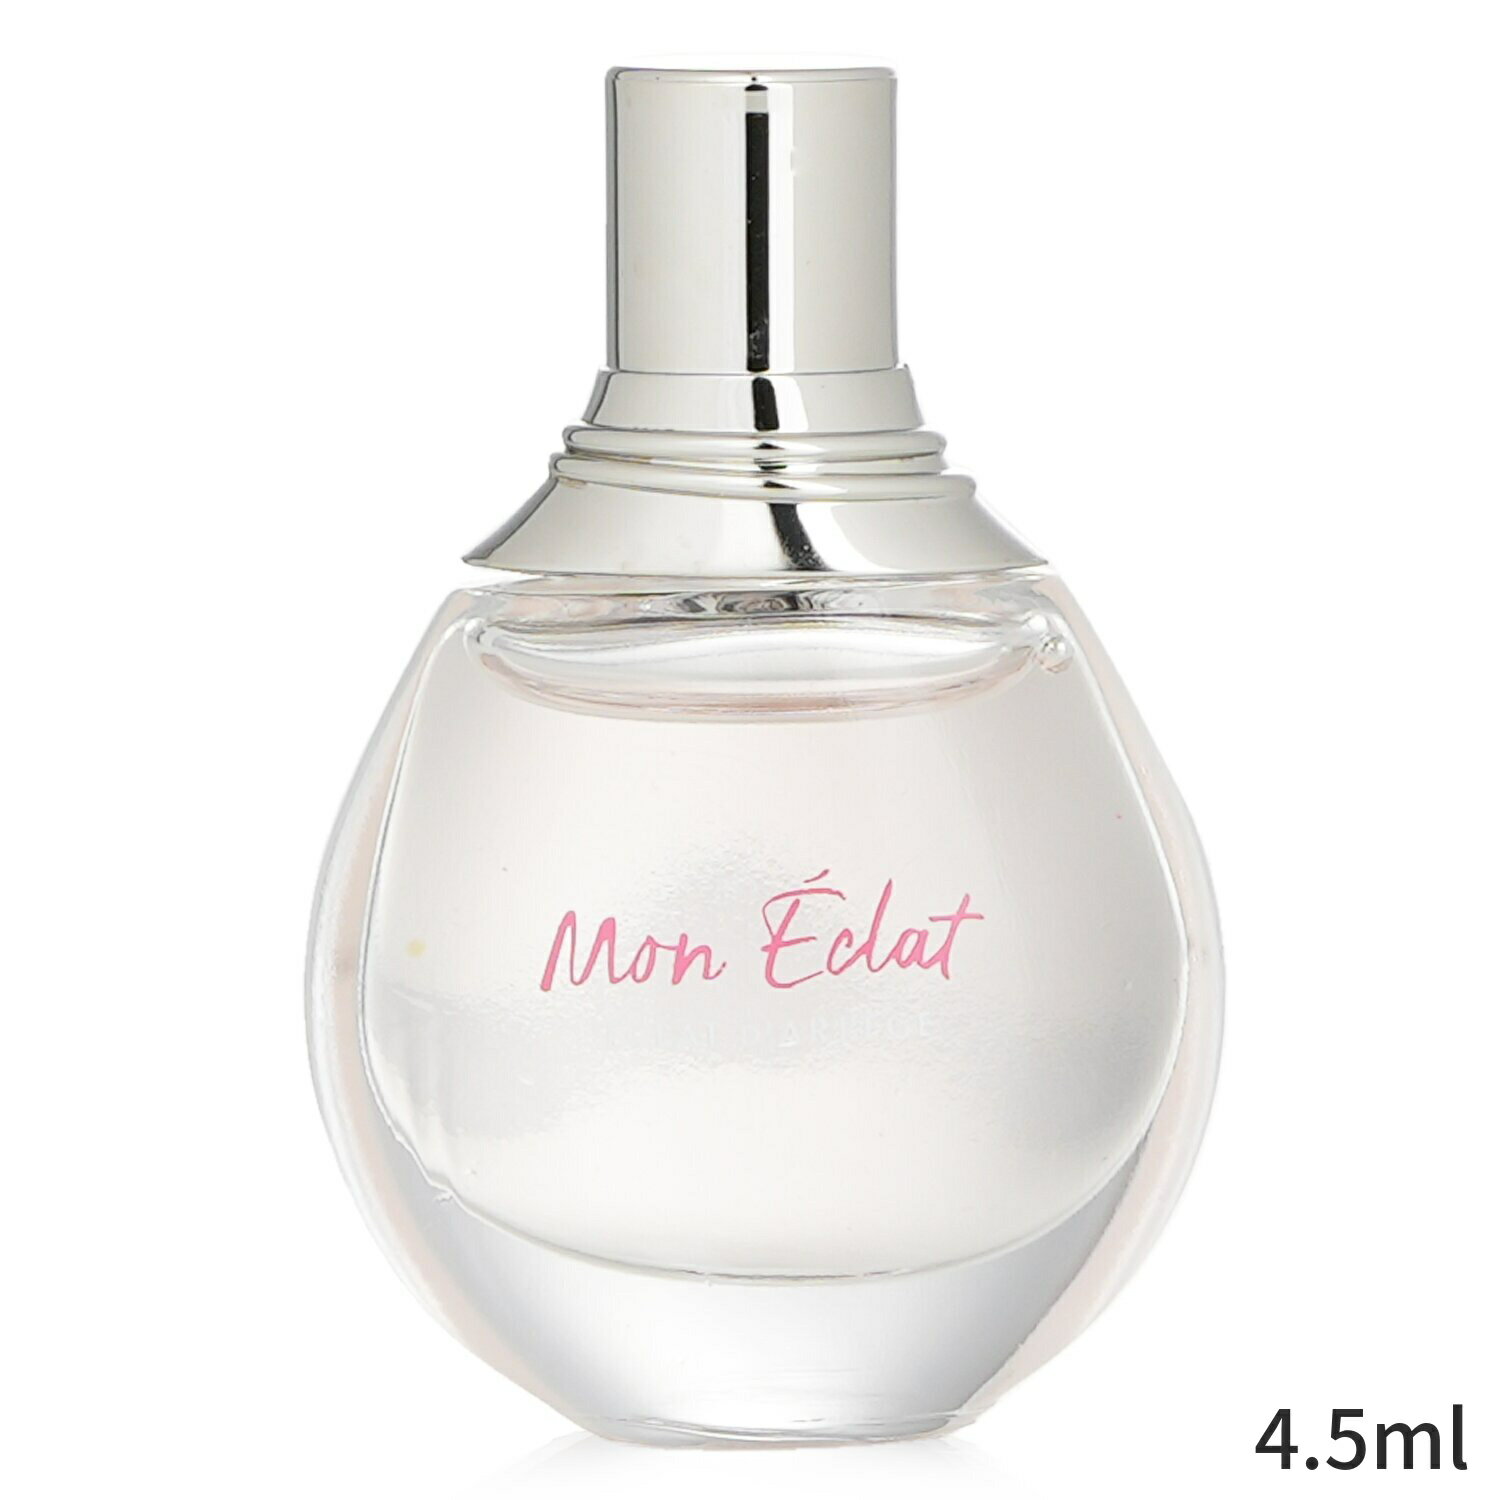 ランバン 香水 Lanvin Mon Eclat Eau De Parfum Spray (Miniature) 4.5ml レディース 女性用 フレグランス 誕生日プレゼント ギフト 人気 ブランド コスメ